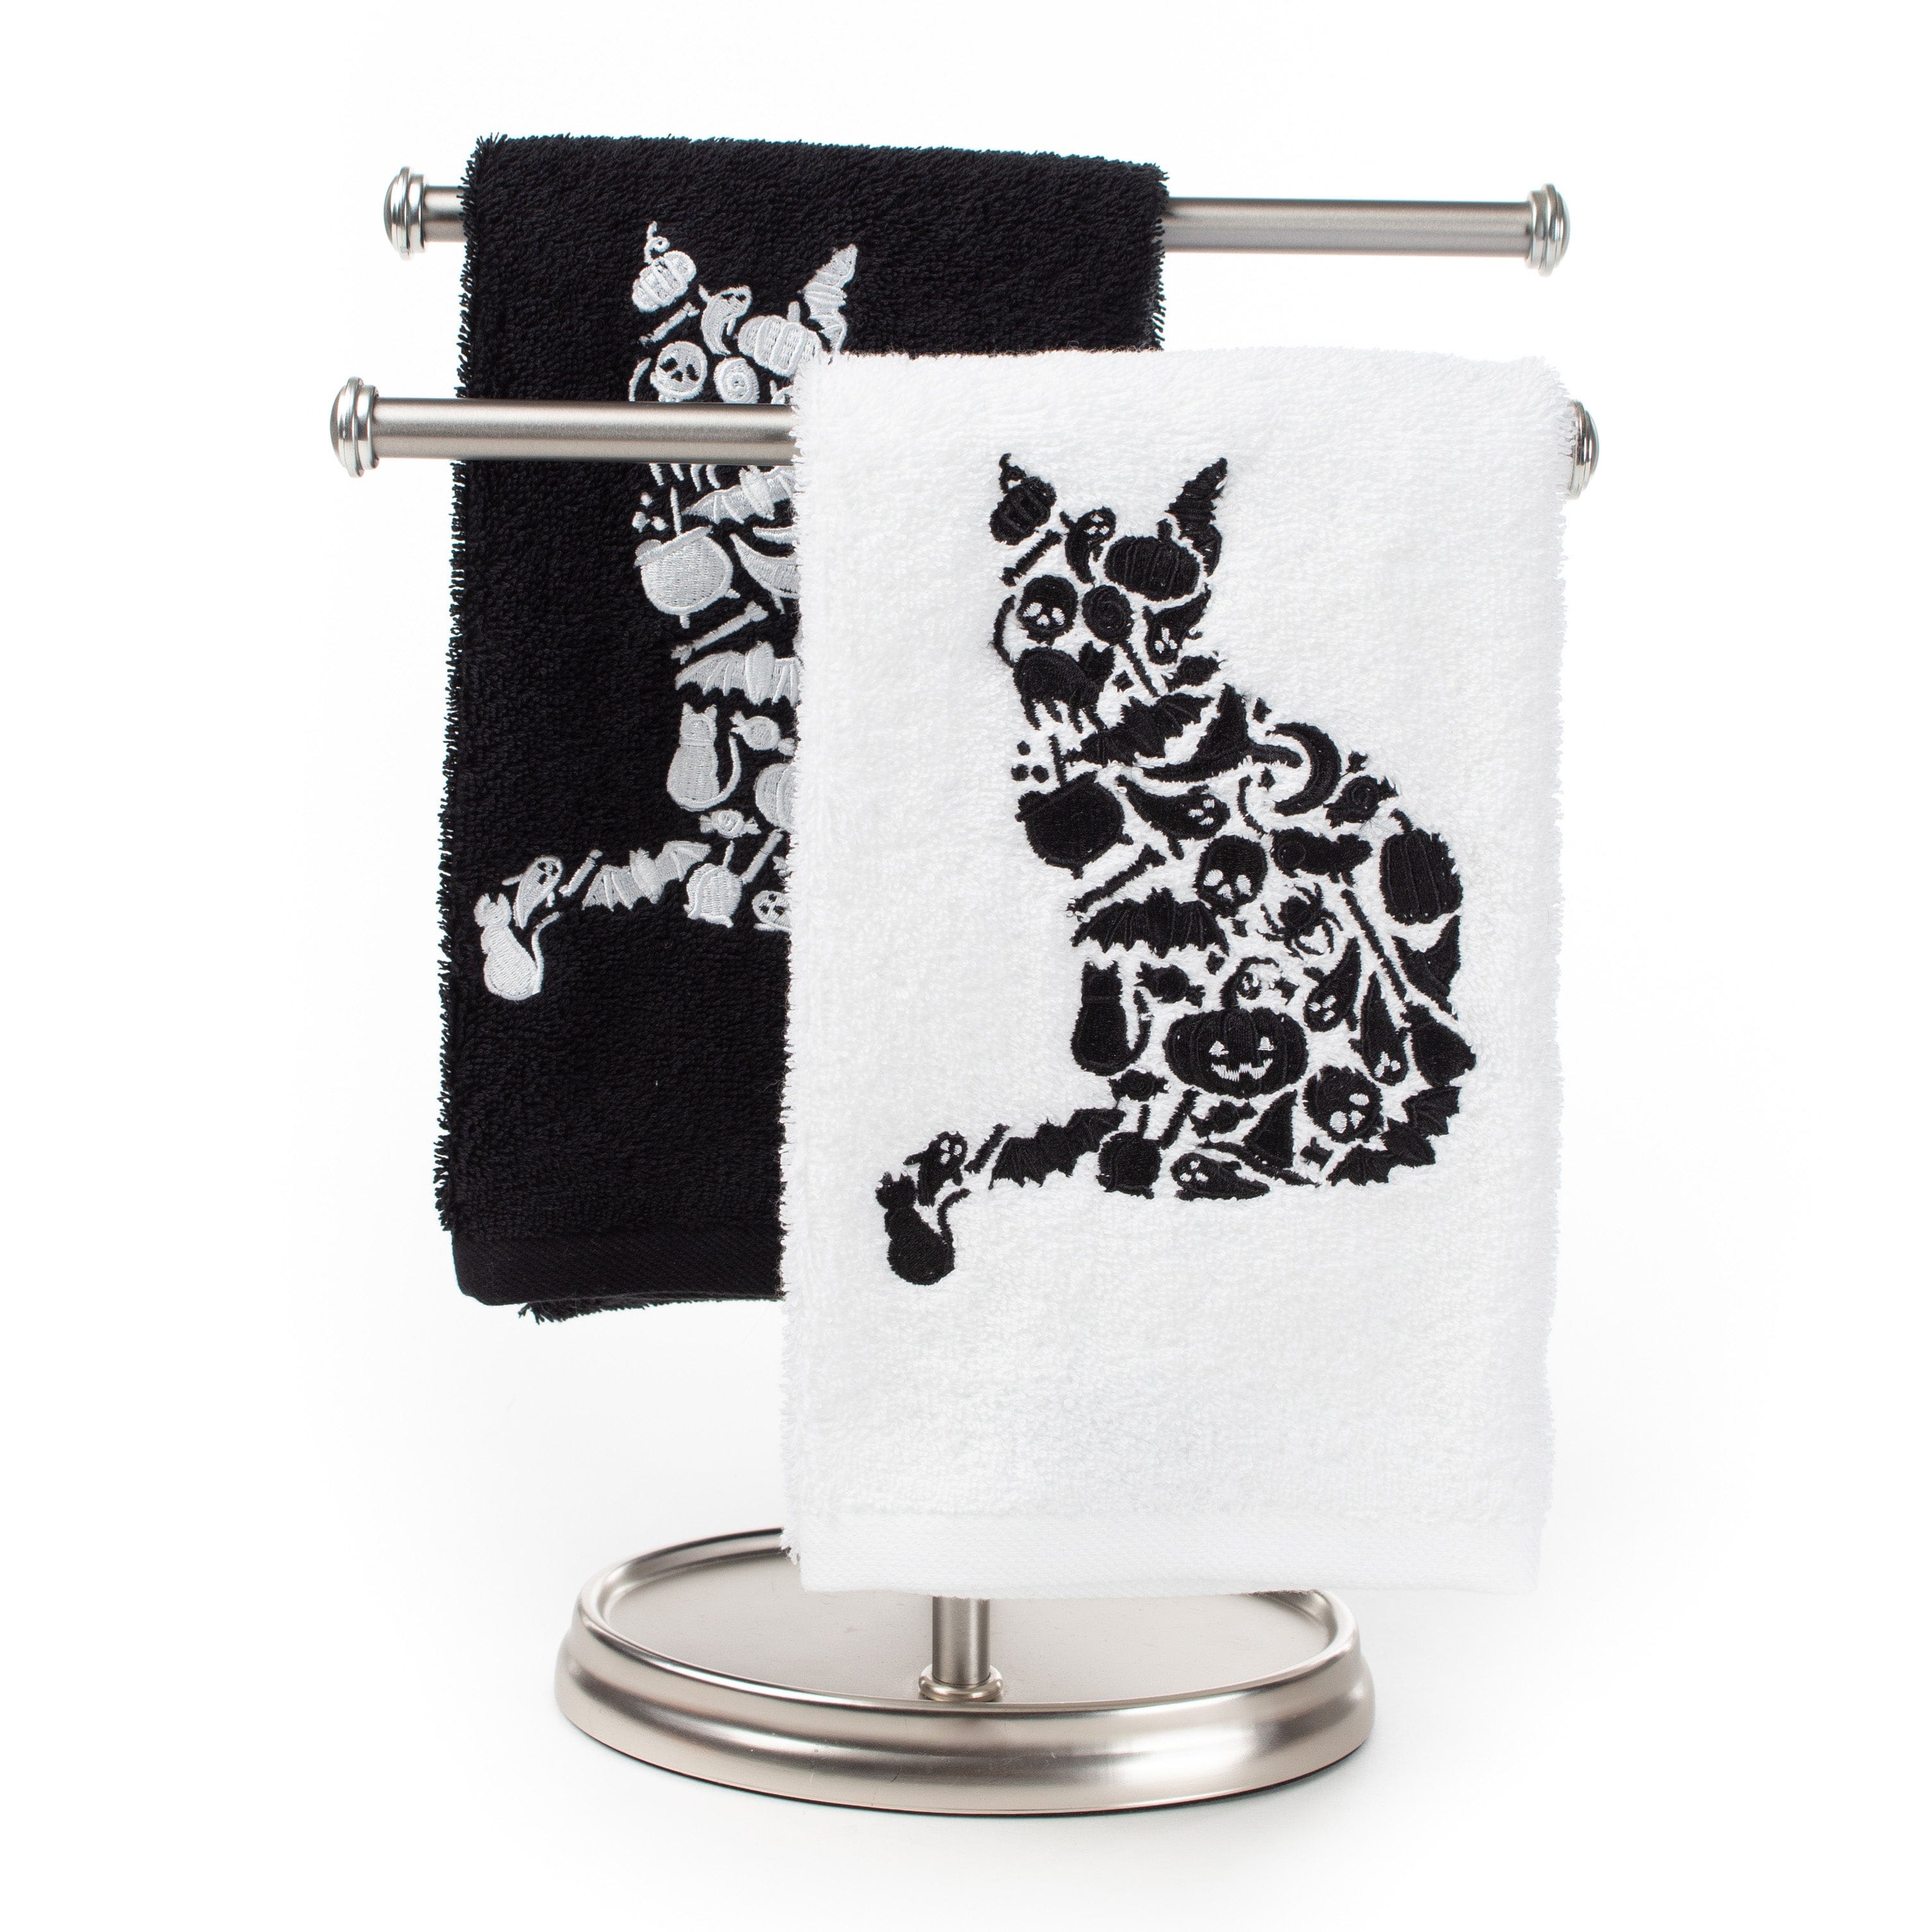 https://triple-t-studios.com/cdn/shop/products/triple-t-studios-bath-towels-washcloths-halloween-cat-hand-towel-37814294937834_5000x.jpg?v=1660486202